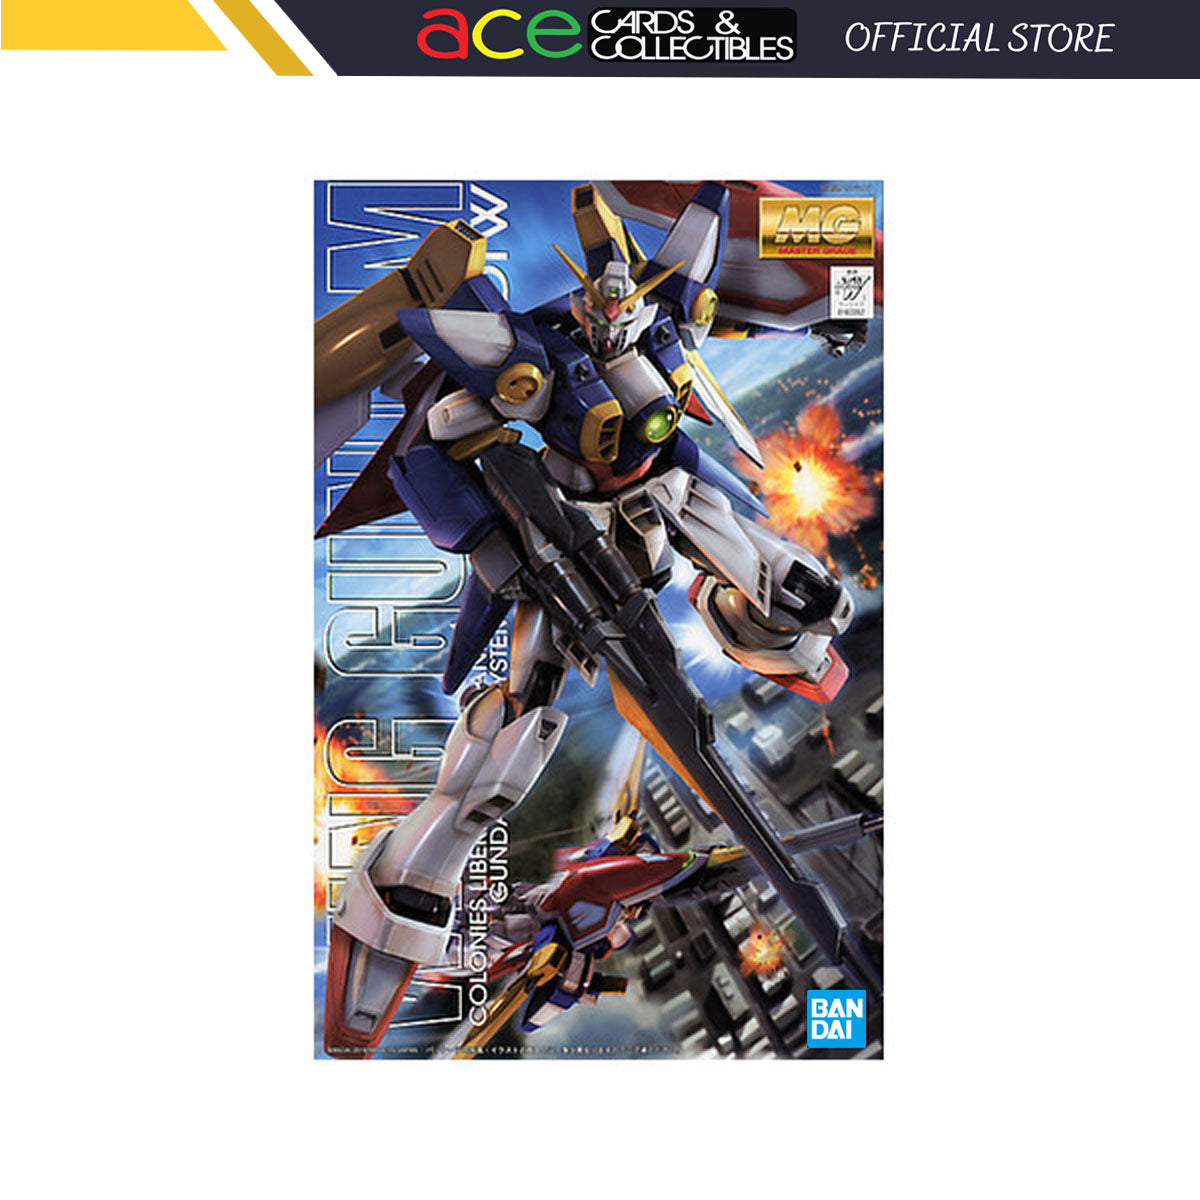 Gunpla 1/100 MG Wing Gundam-Bandai-Ace Cards & Collectibles